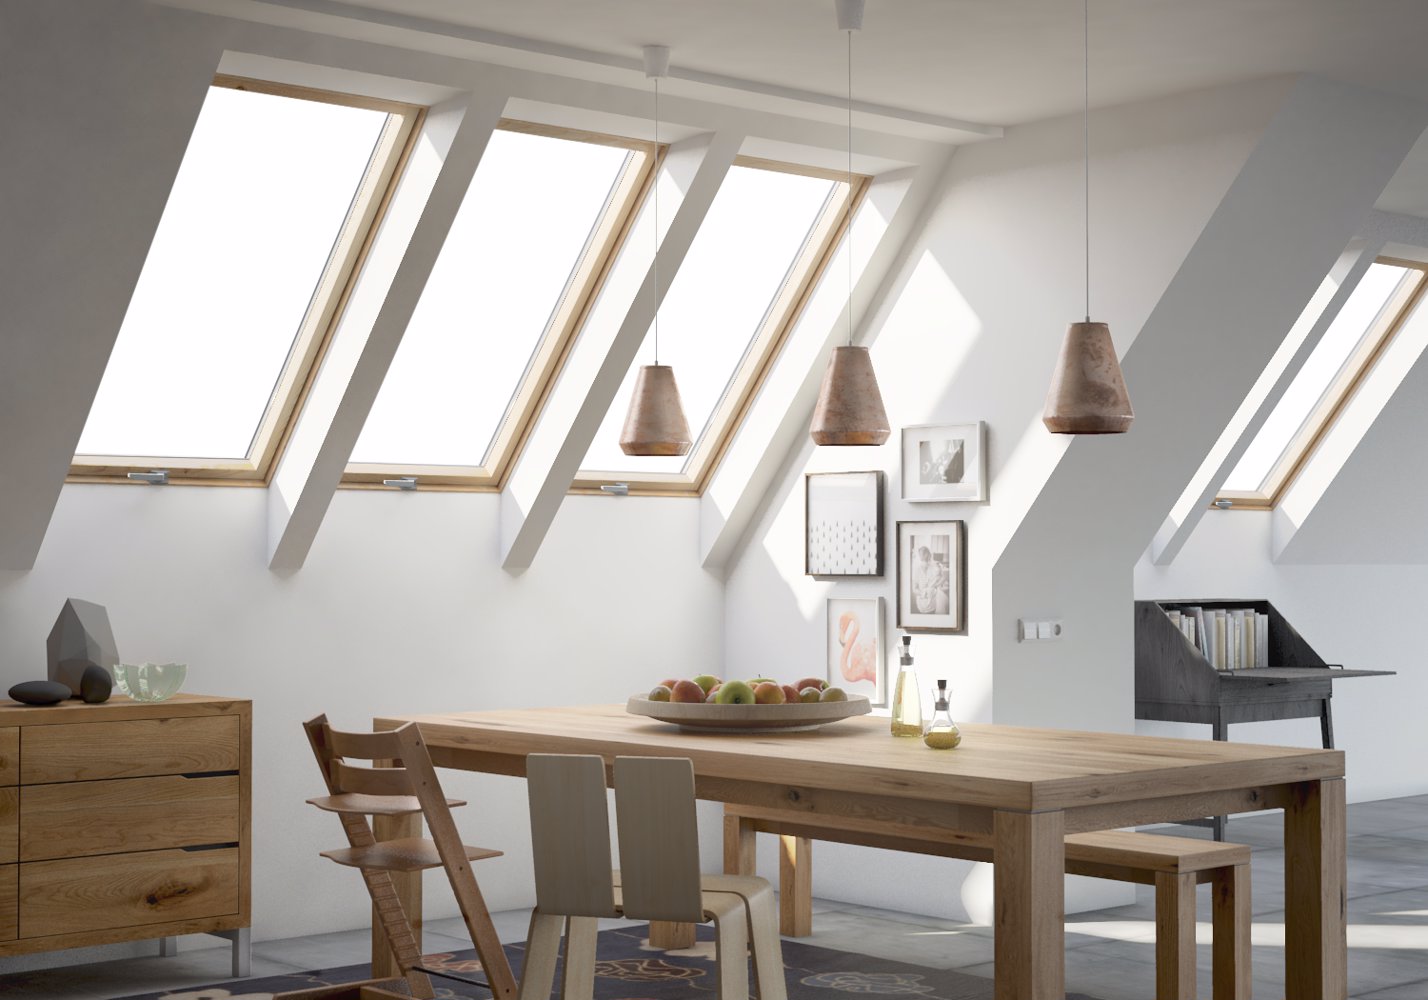 EnergyLite – nowoczesna odsłona okien dachowych	